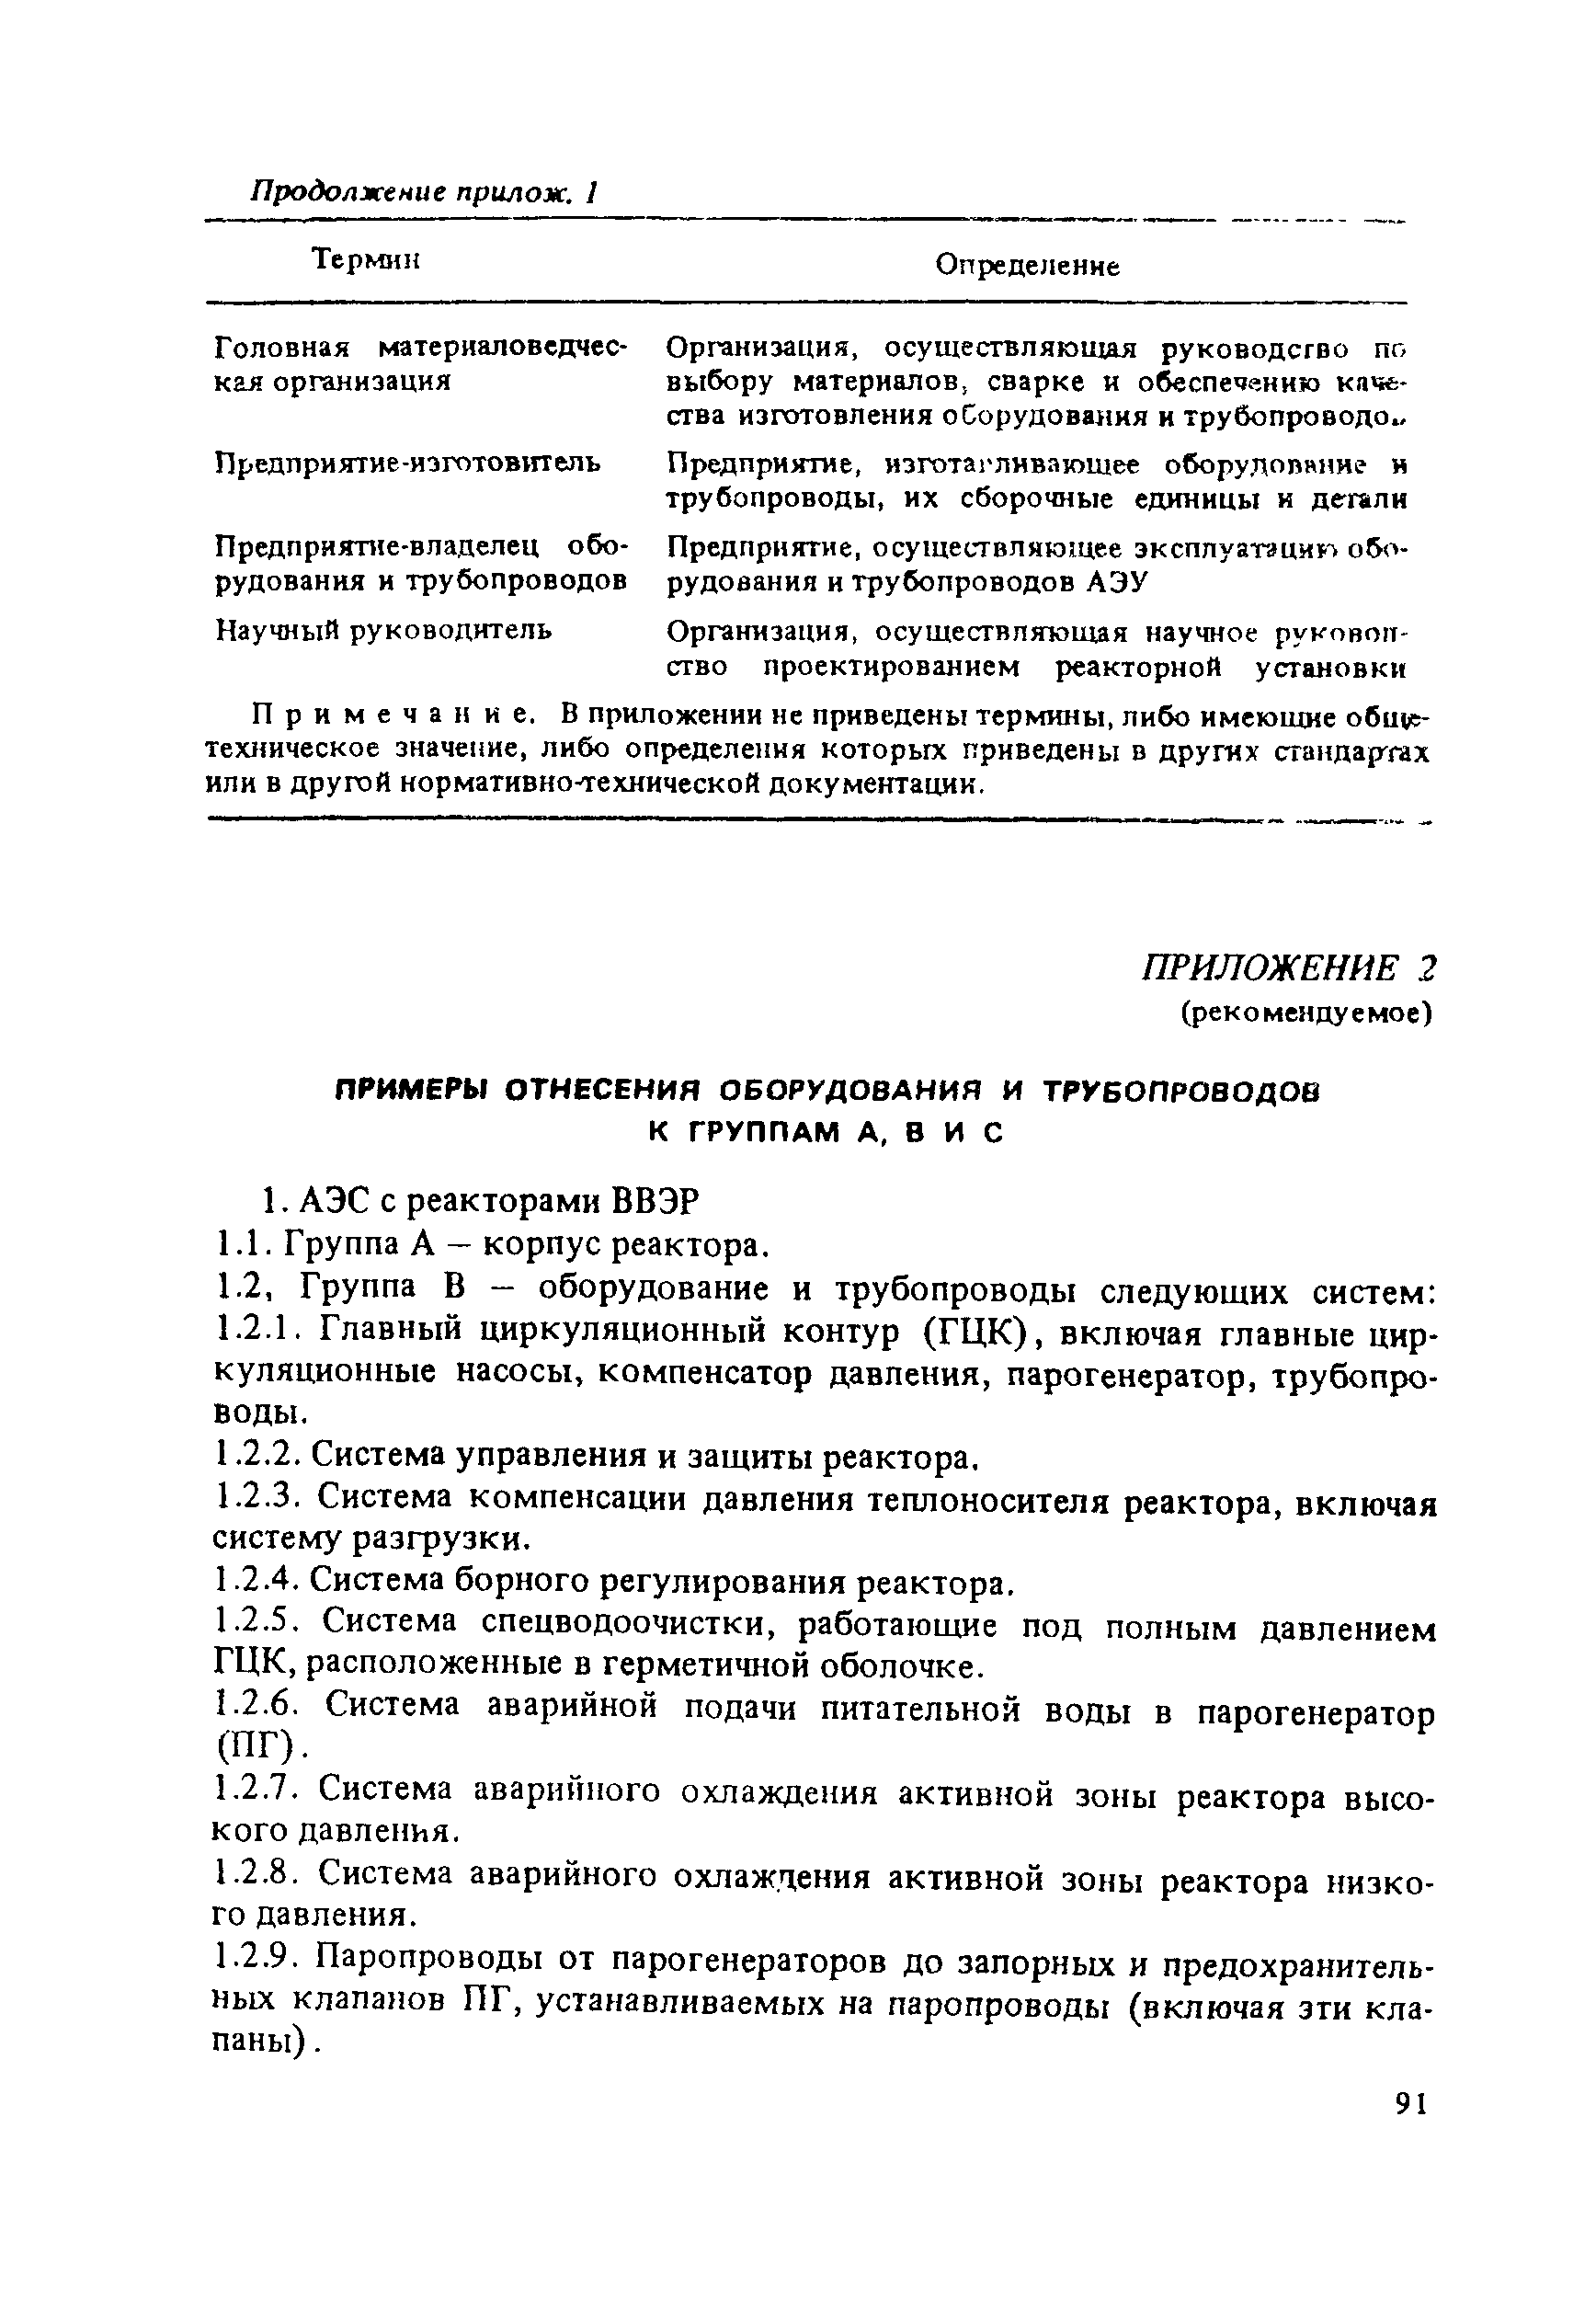 ПНАЭ Г-7-008-89